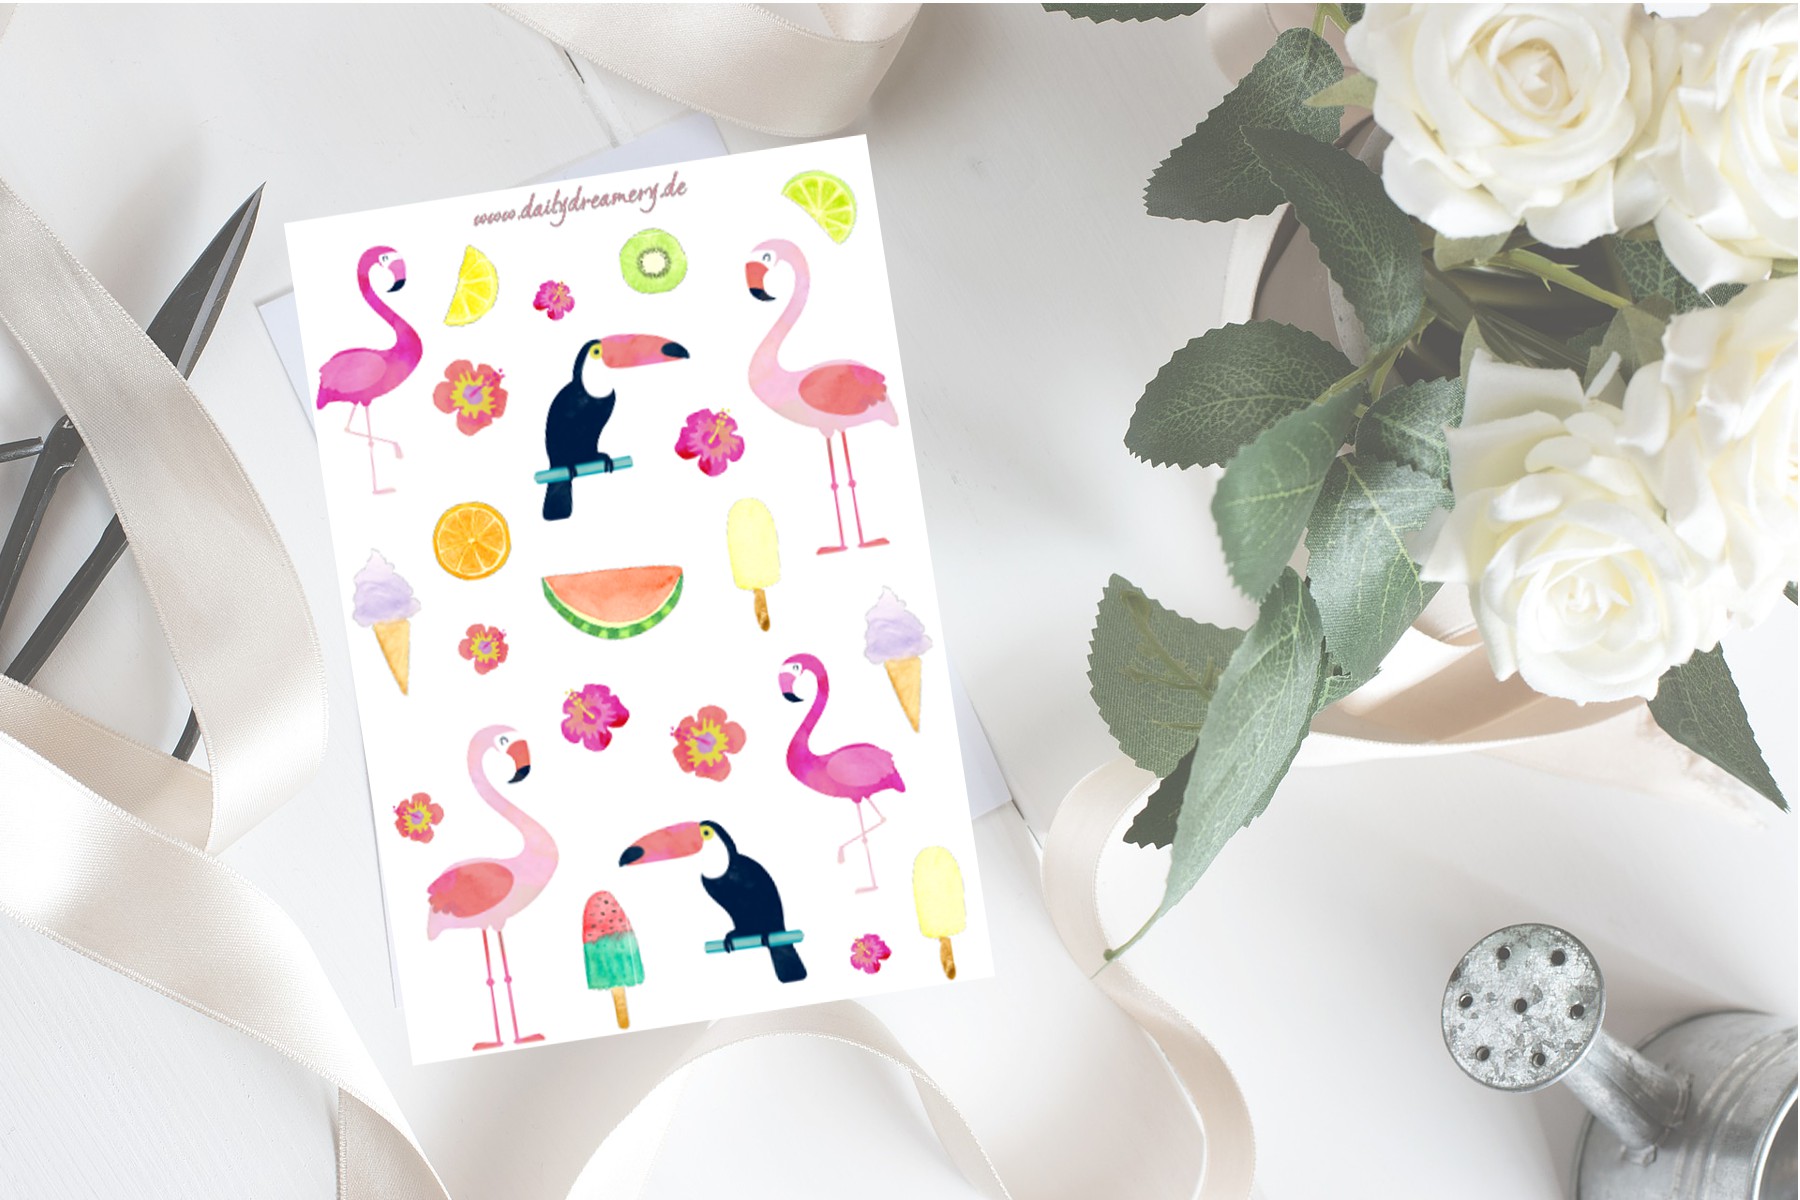 zauberhafter Stickerbogen mit witzigen Sommerparty Motiven und Flamingos für dein Bulletjournal oder zum Kartenbasteln #sticker #stationery #bulletjournal #cardmaking